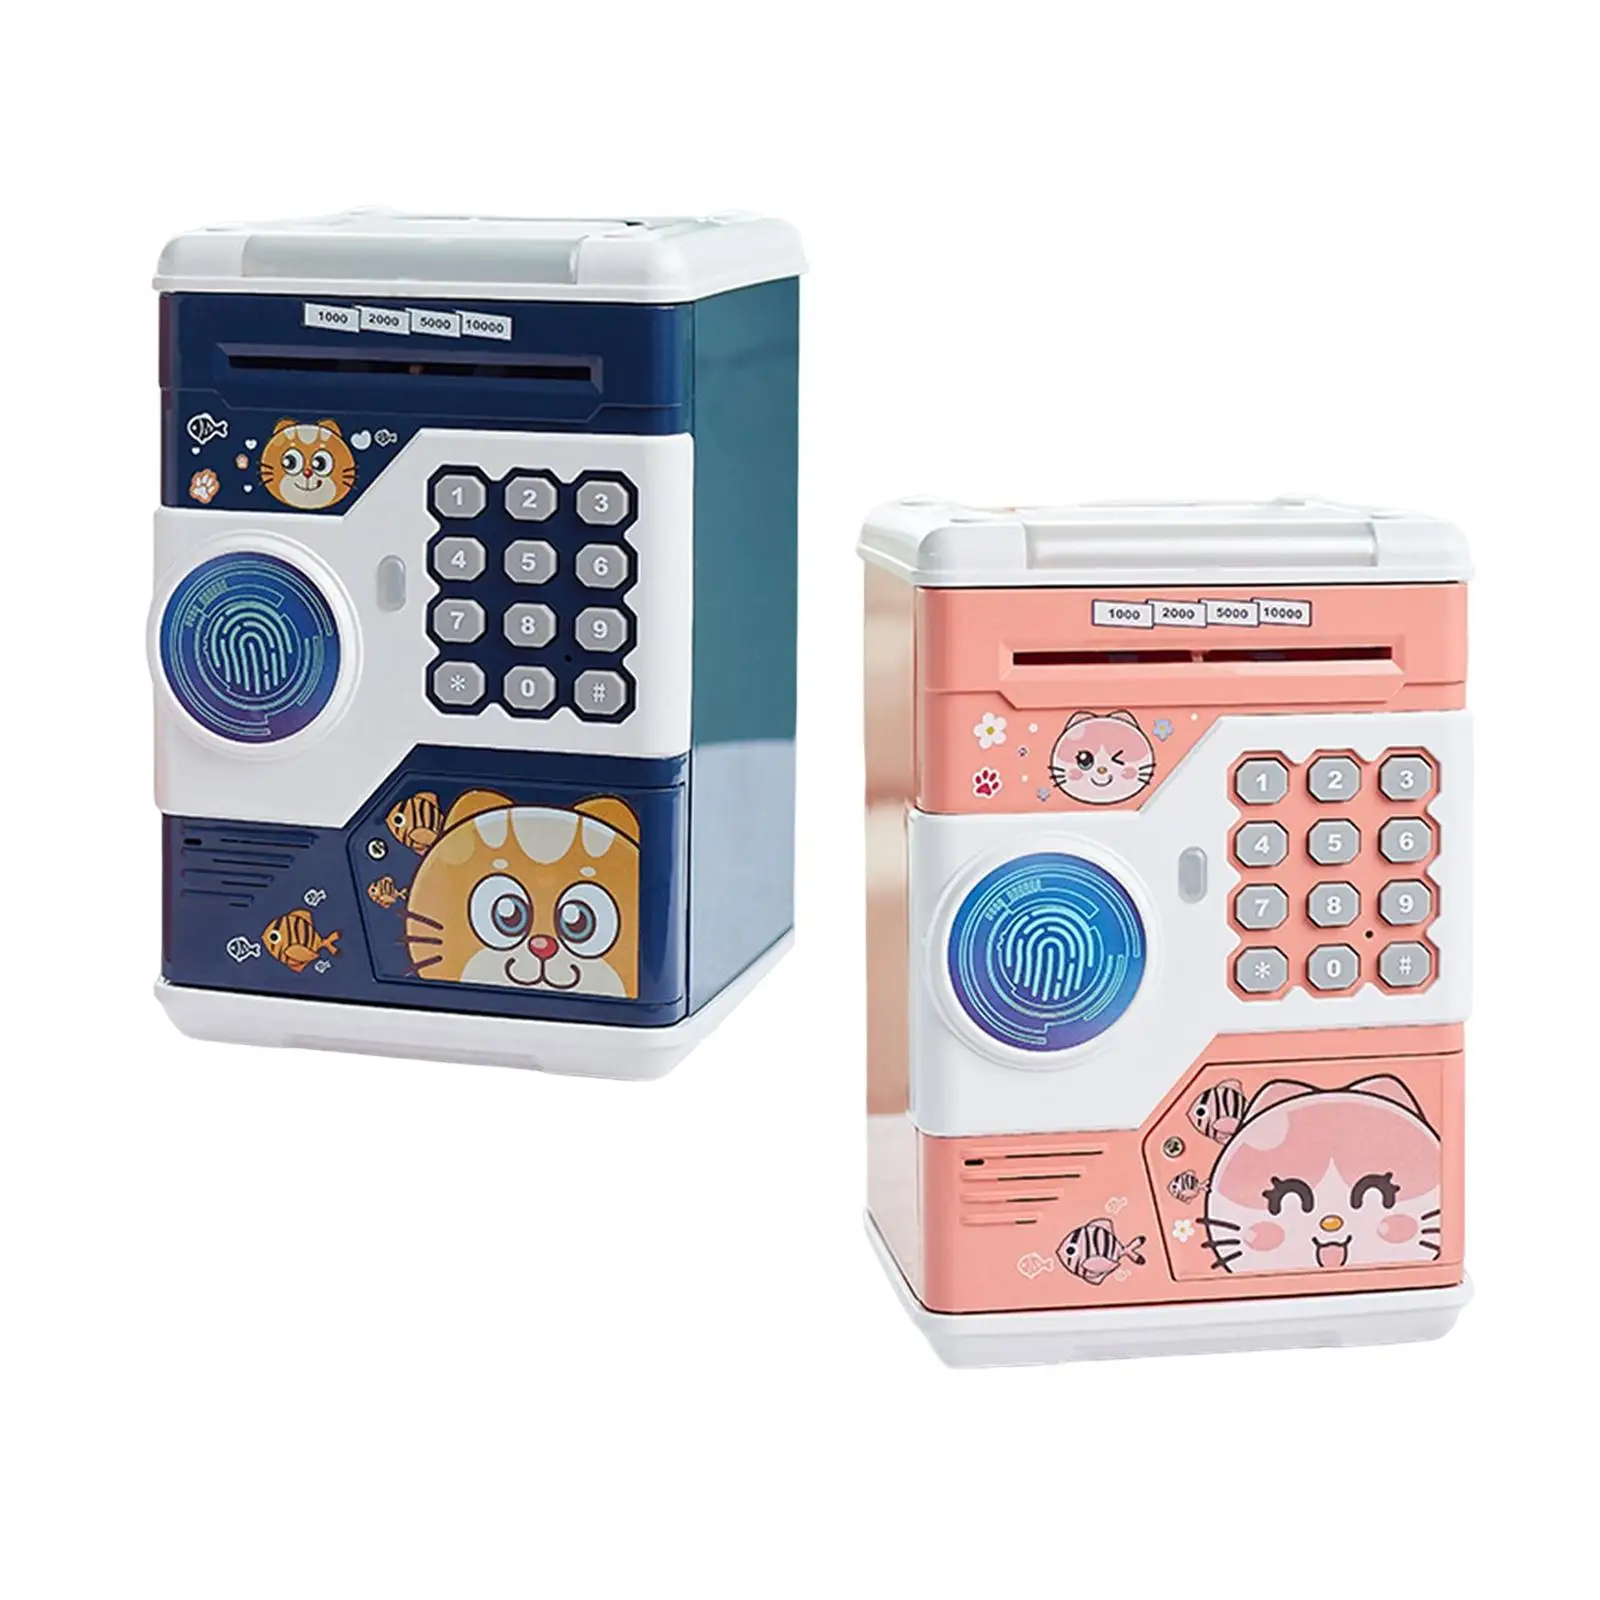  Bank Toy Fingerprint Password Code Lock    Saving Saving Bank Toy for Girls Birthday Gifts